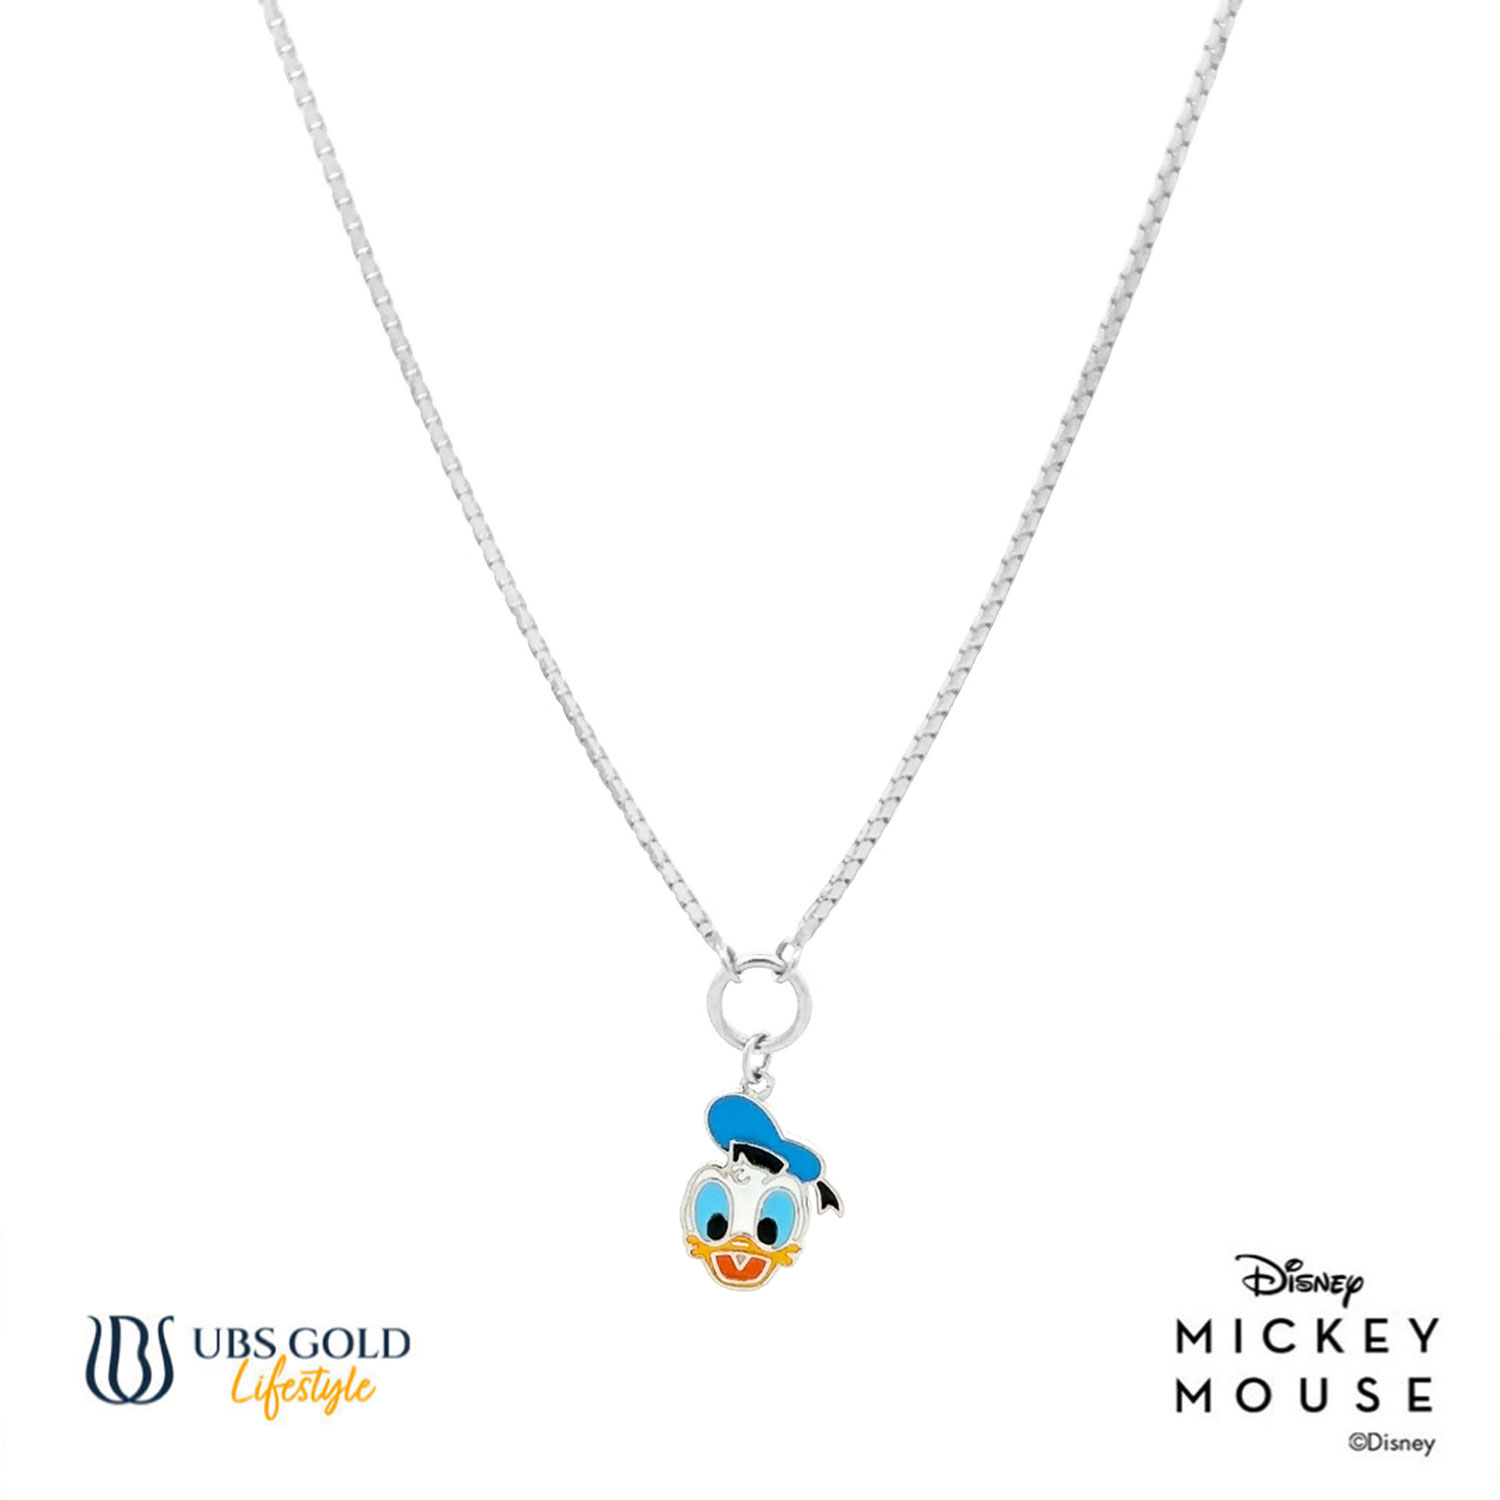 UBS Kalung Emas Anak Disney Donald Duck - Kky0413 - 17K